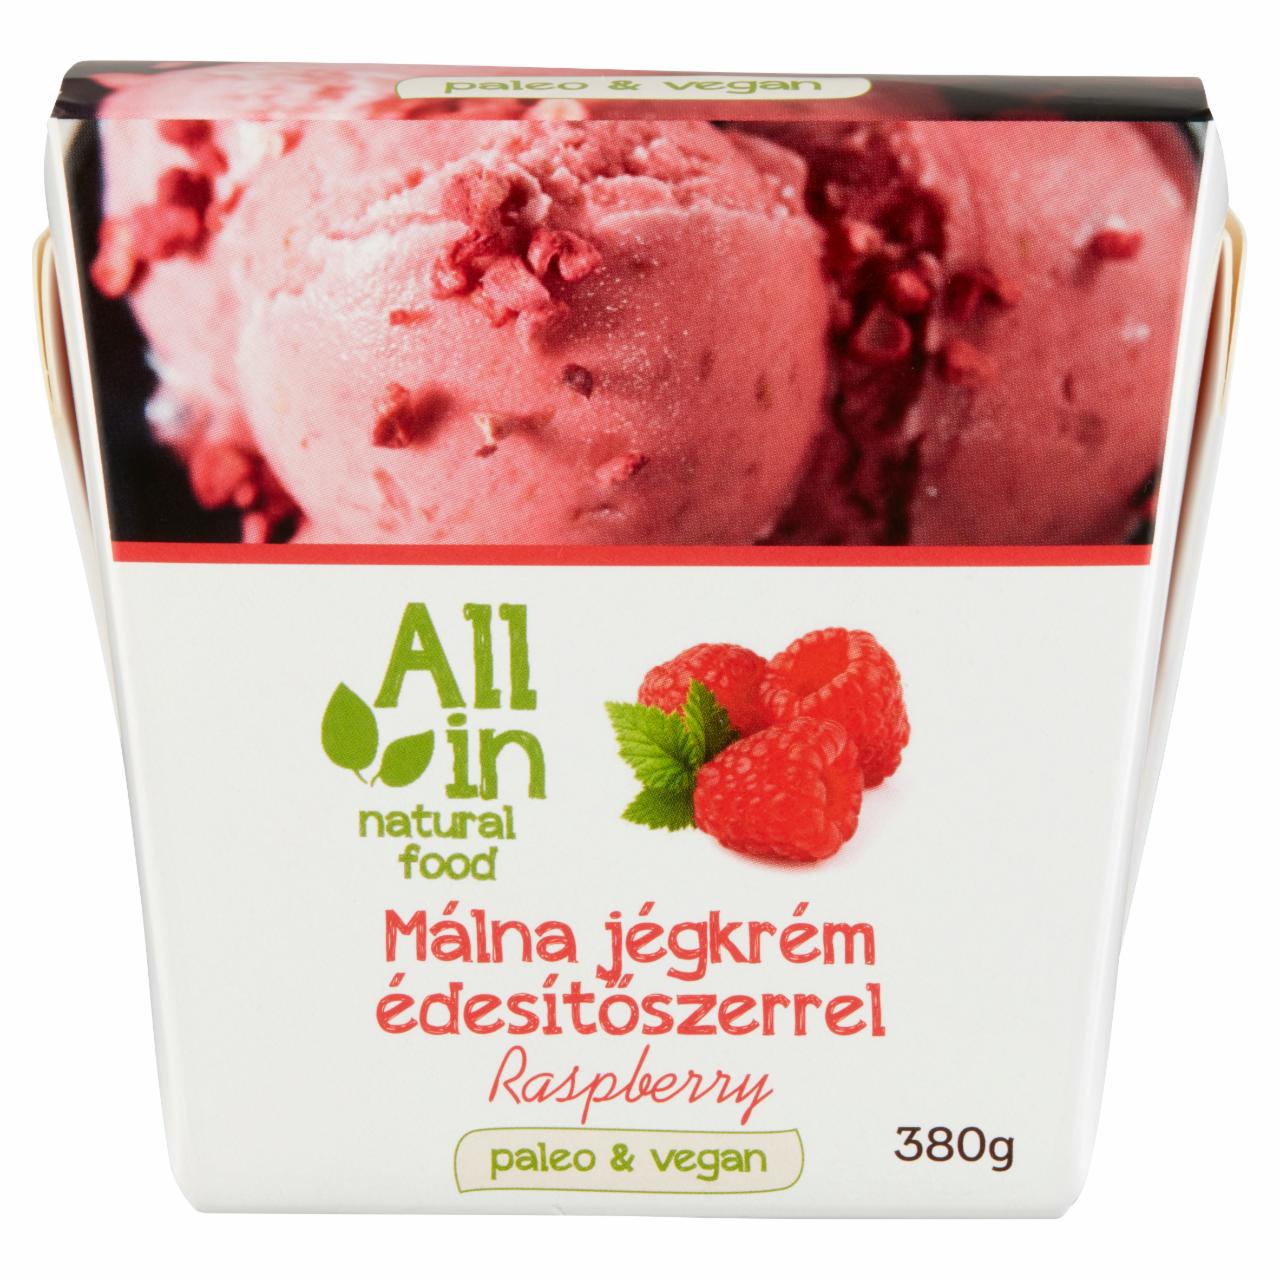 Képek - All in natural food málna jégkrém édesítőszerrel 380 g